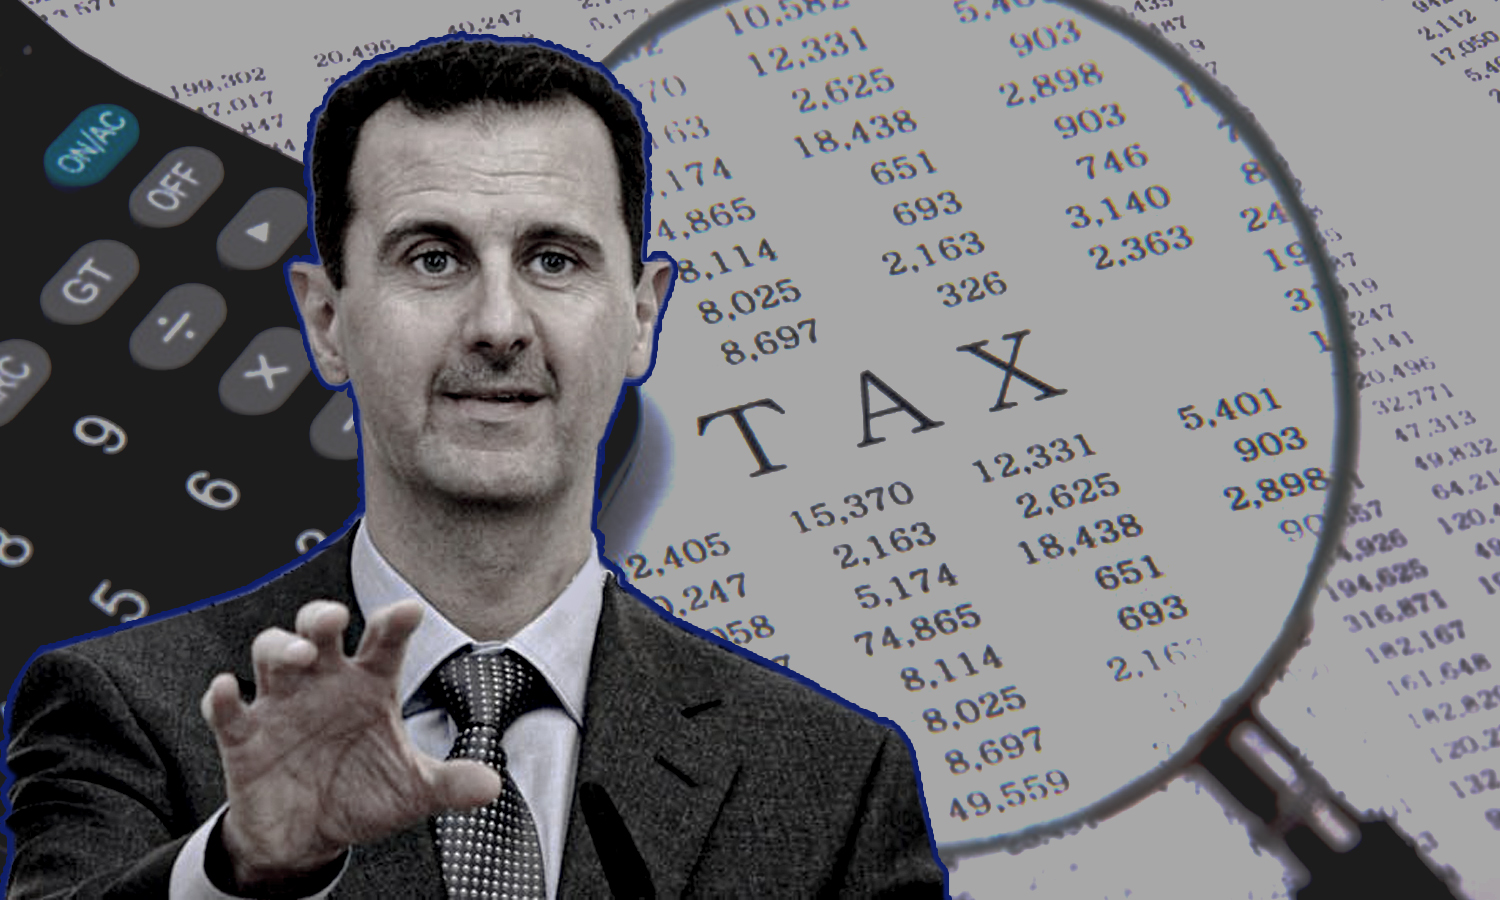 بشار الأسد يتوجه لتحصيل التهرب الضريبي في سوريا (عنب بلدي)